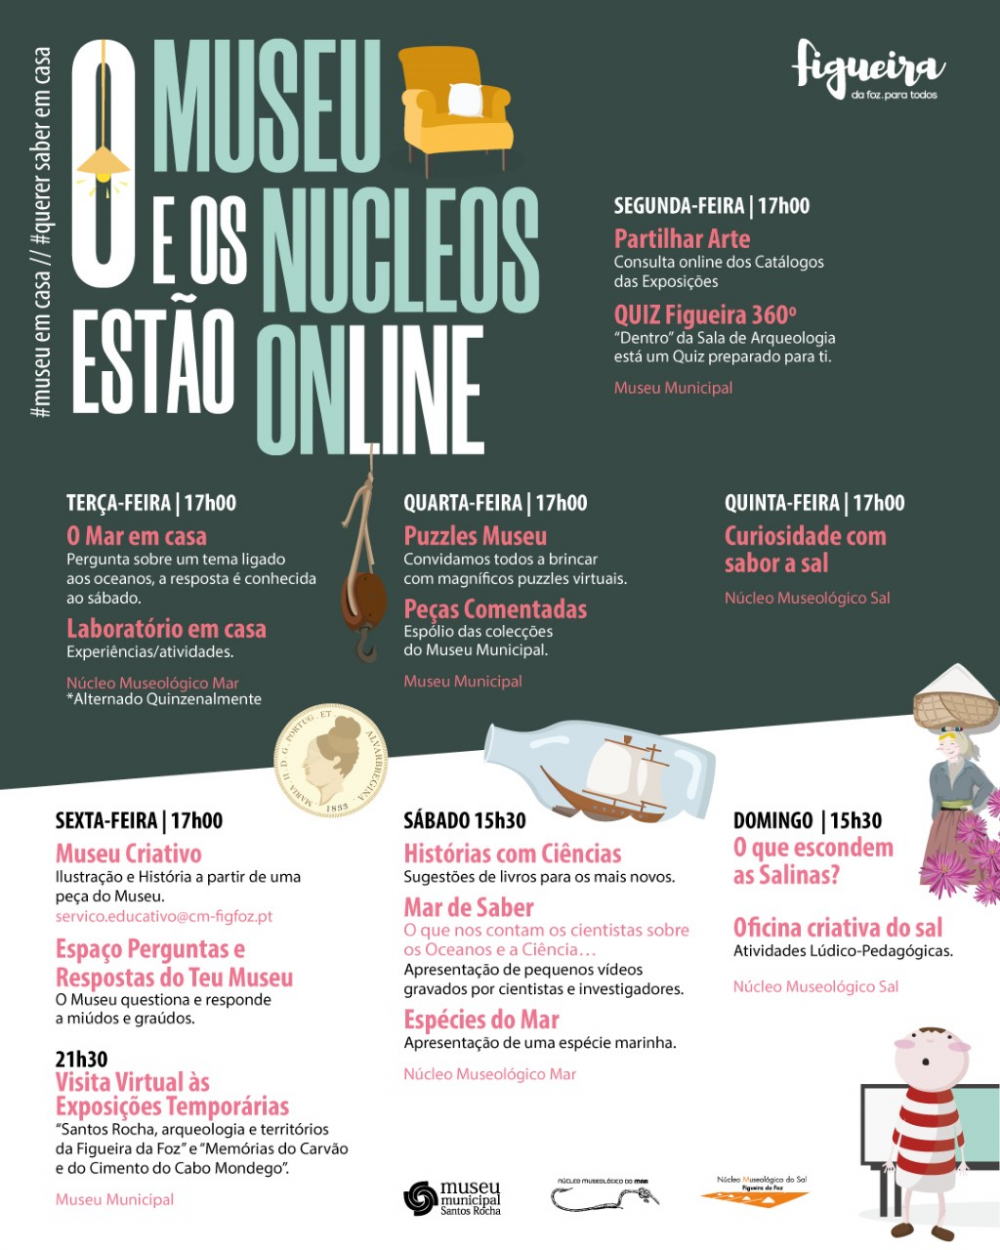 Museu Municipal e Núcleos Museológicos com programação semanal online